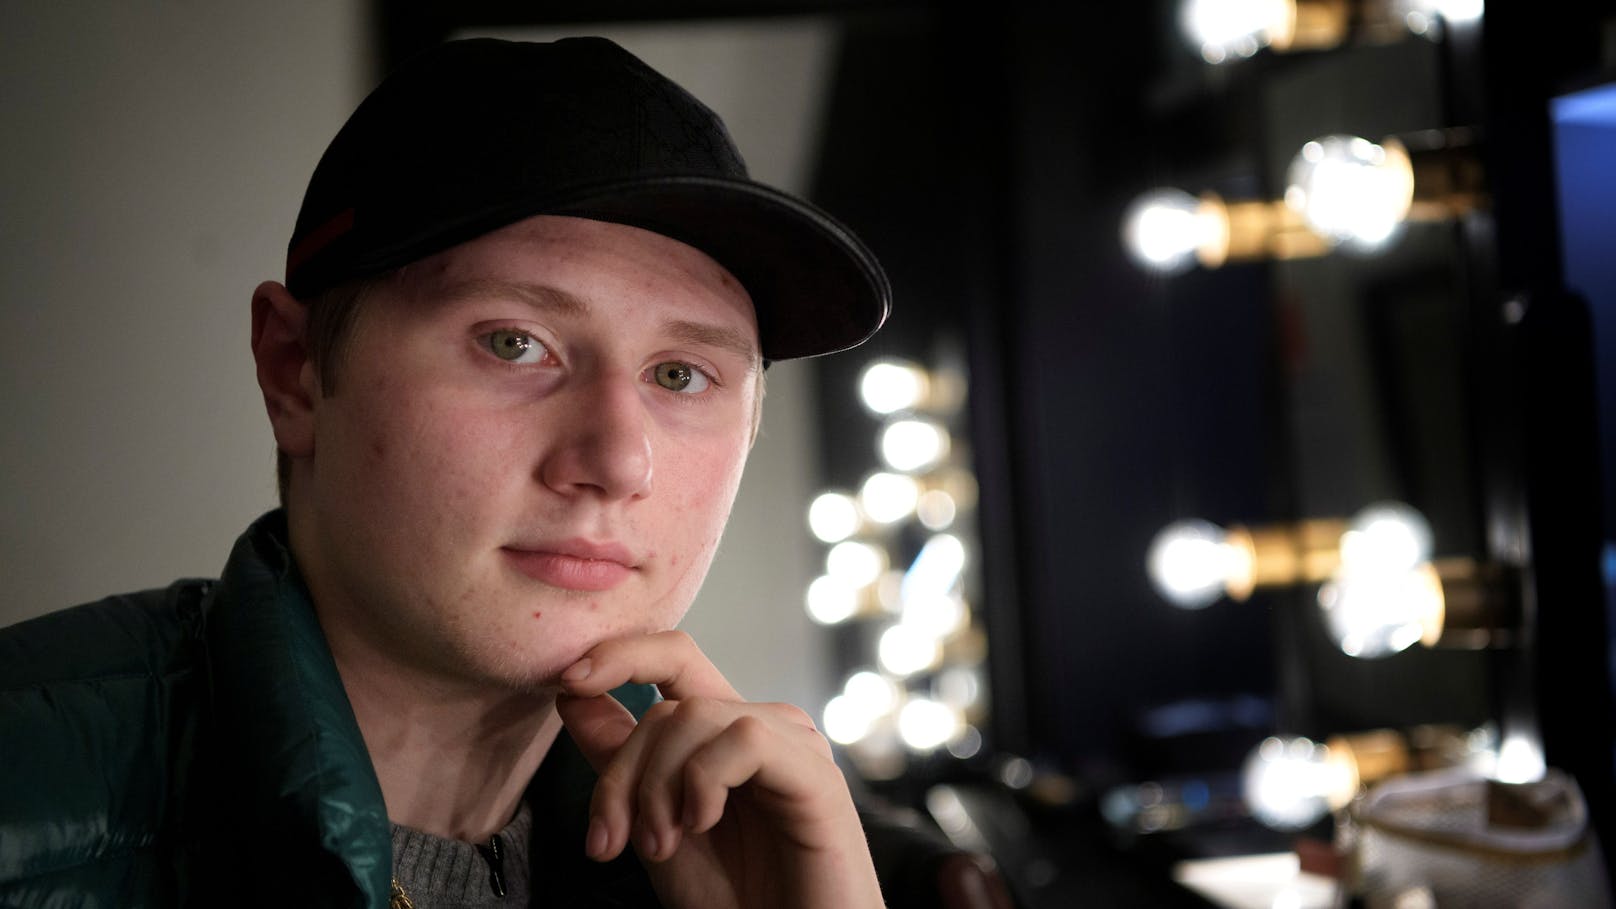 Der junge schwedische Rapper Einar wurde erschossen. Der 19Jährige hatte offenbar Kontakte ins Bandenmilieu.